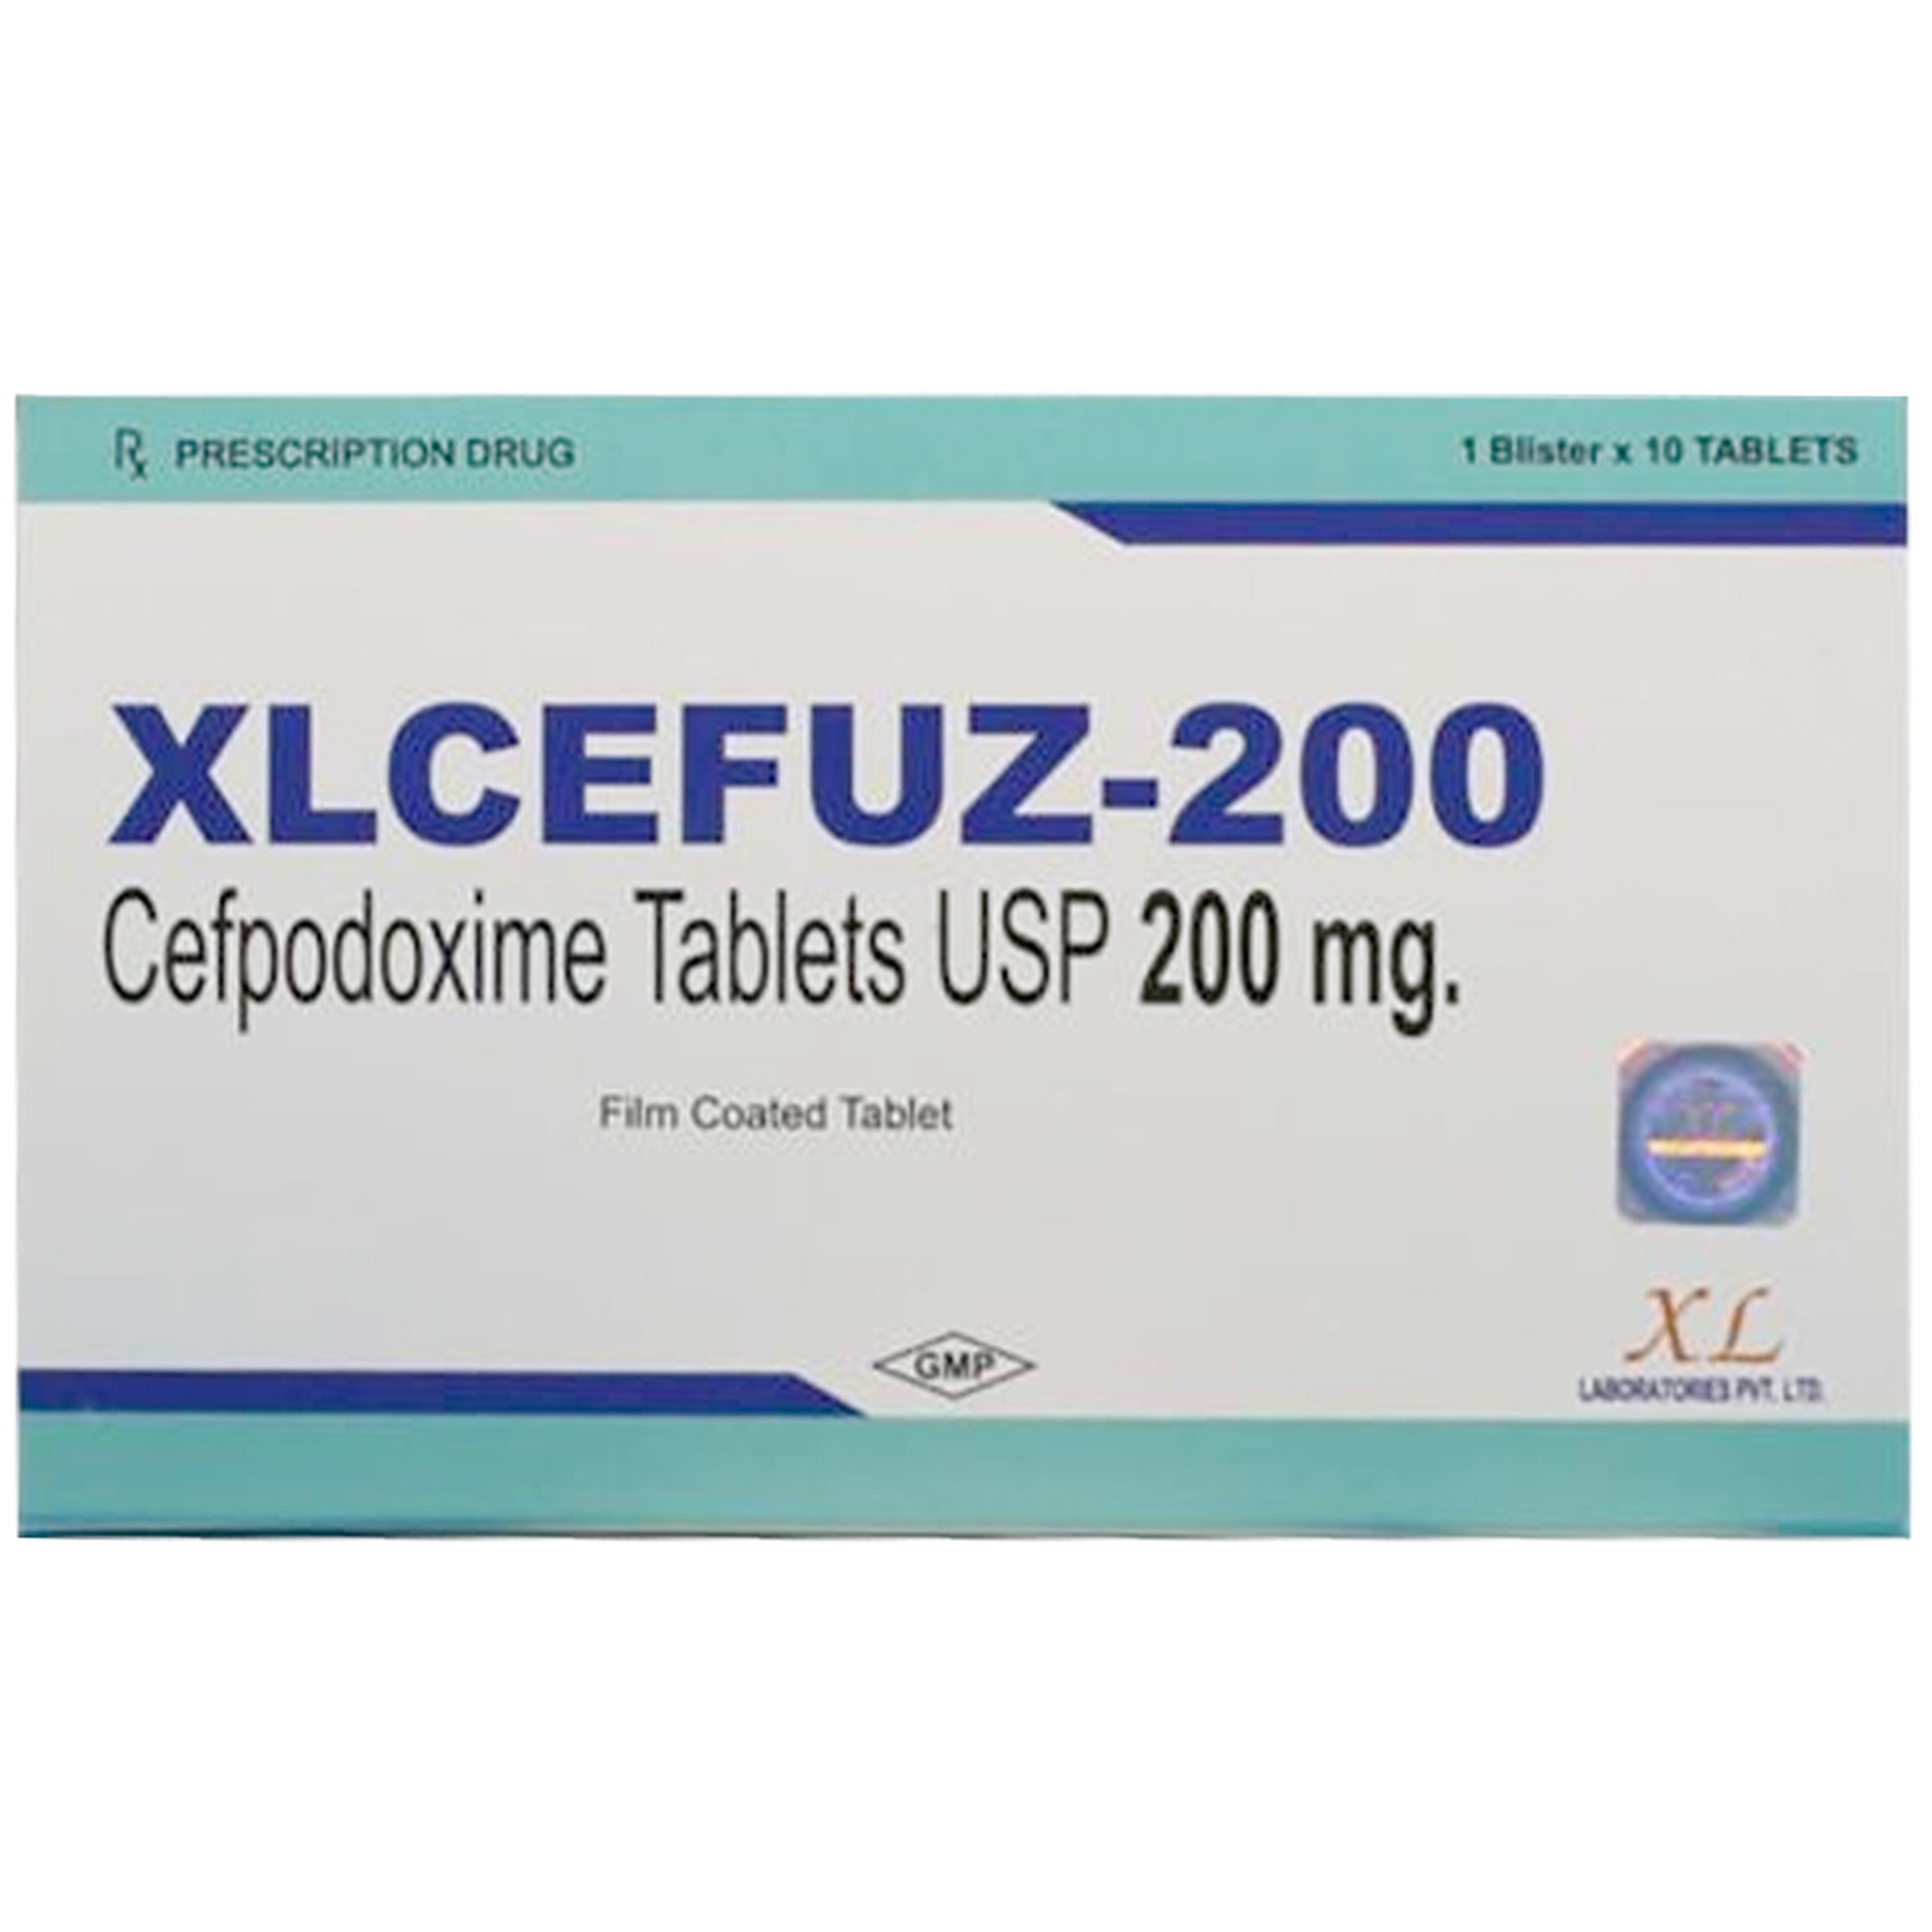 Thuốc Xlcefuz-200 XL Laboratories điều trị nhiễm khuẩn (1 vỉ x 10 viên)